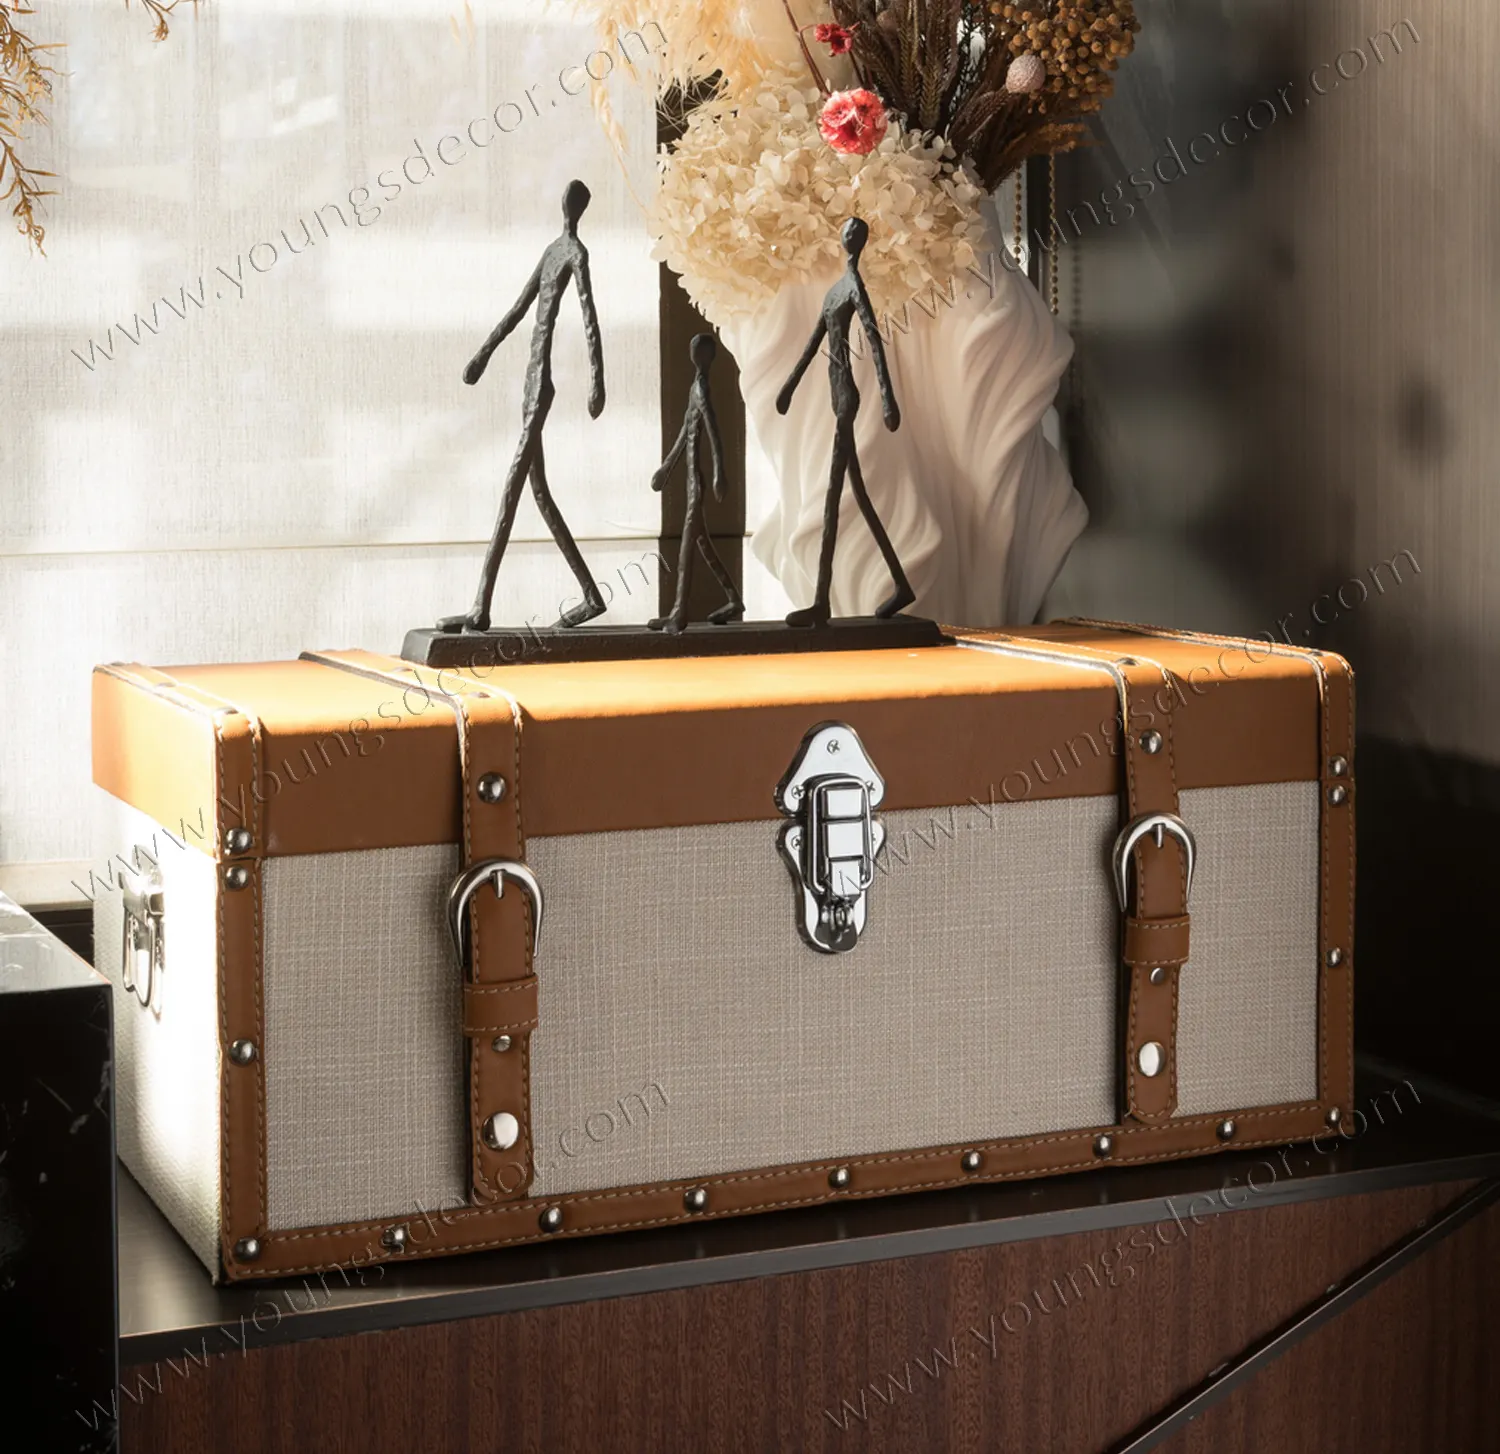 Caixas e caixas de madeira para armazenamento de malas e caixotes com cintos decorativos de couro, retângulo europeu multifuncional moderno feito à mão